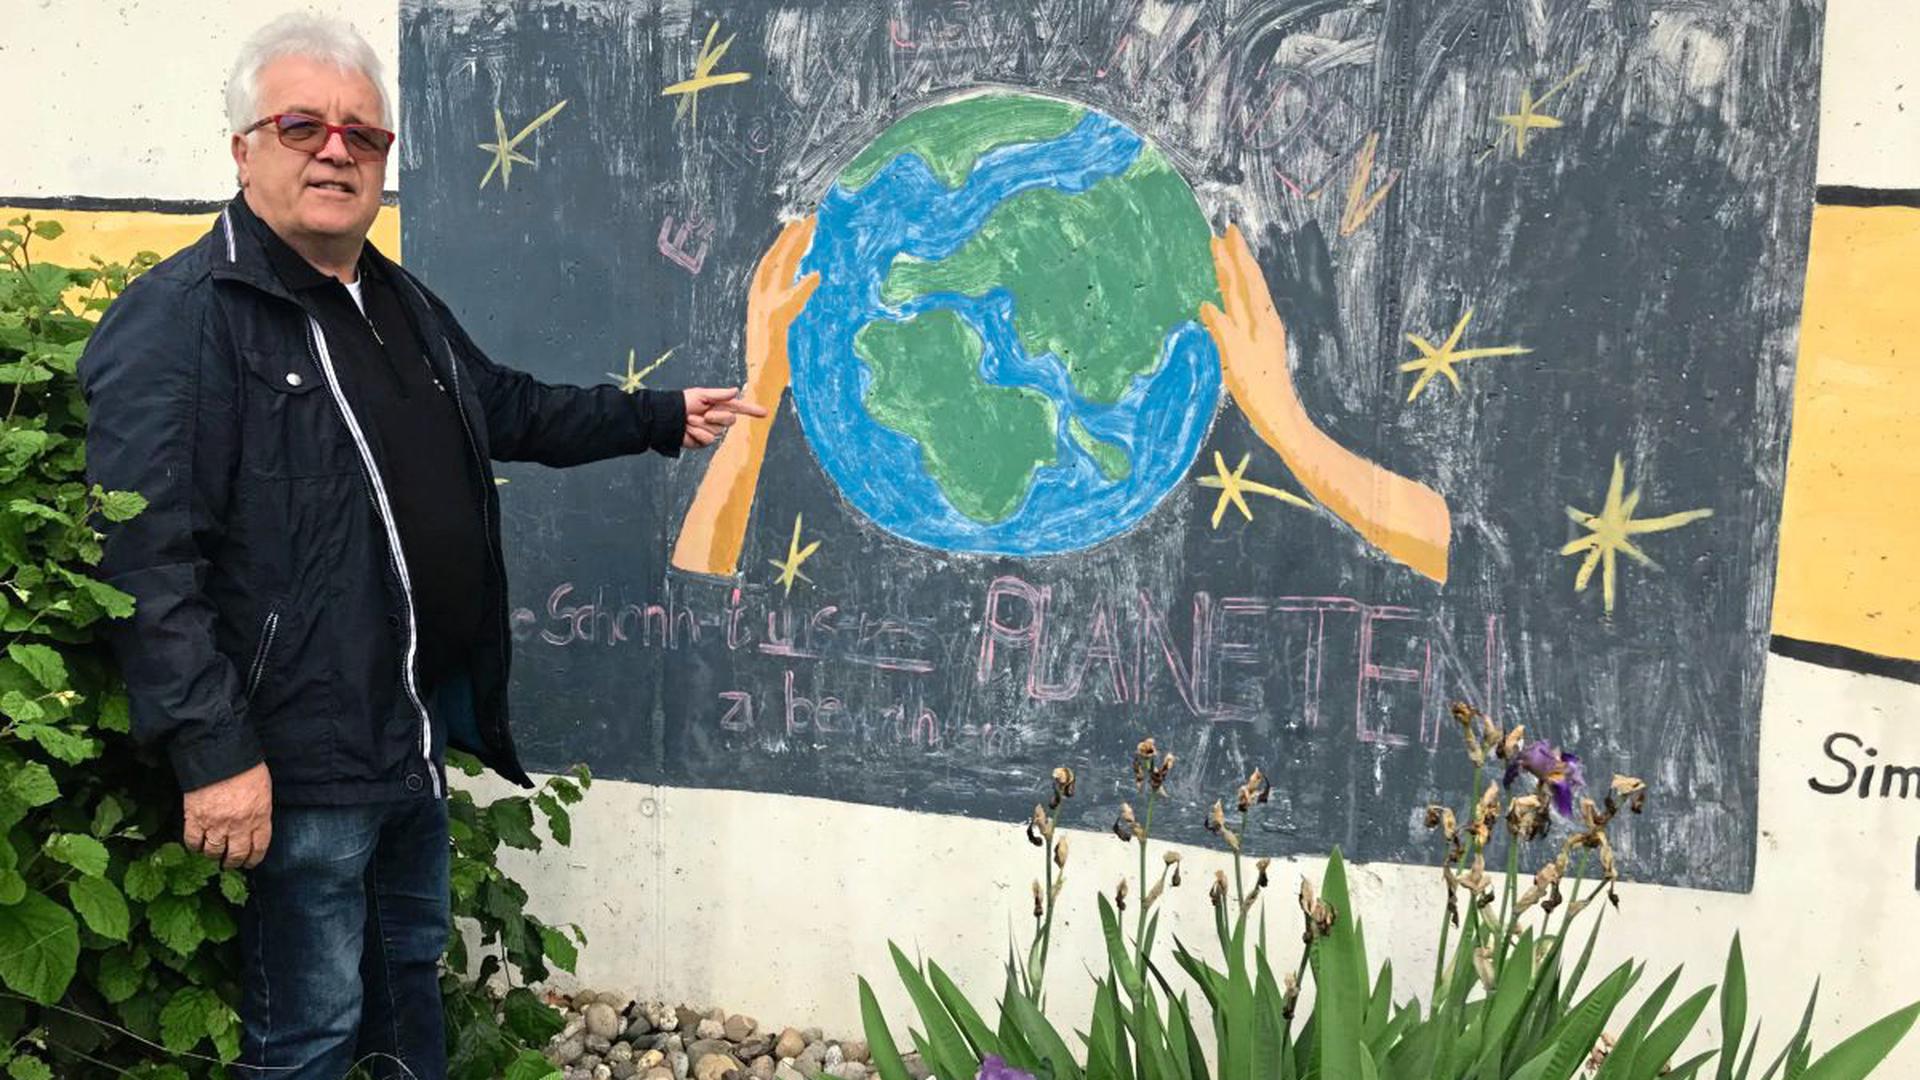 Franz Vogel mit einem Wandbild an seinem Kompostwerk, darauf steht: "Es liegt in unseren Händen, die Schönheit unseres Planeten zu bewahren."